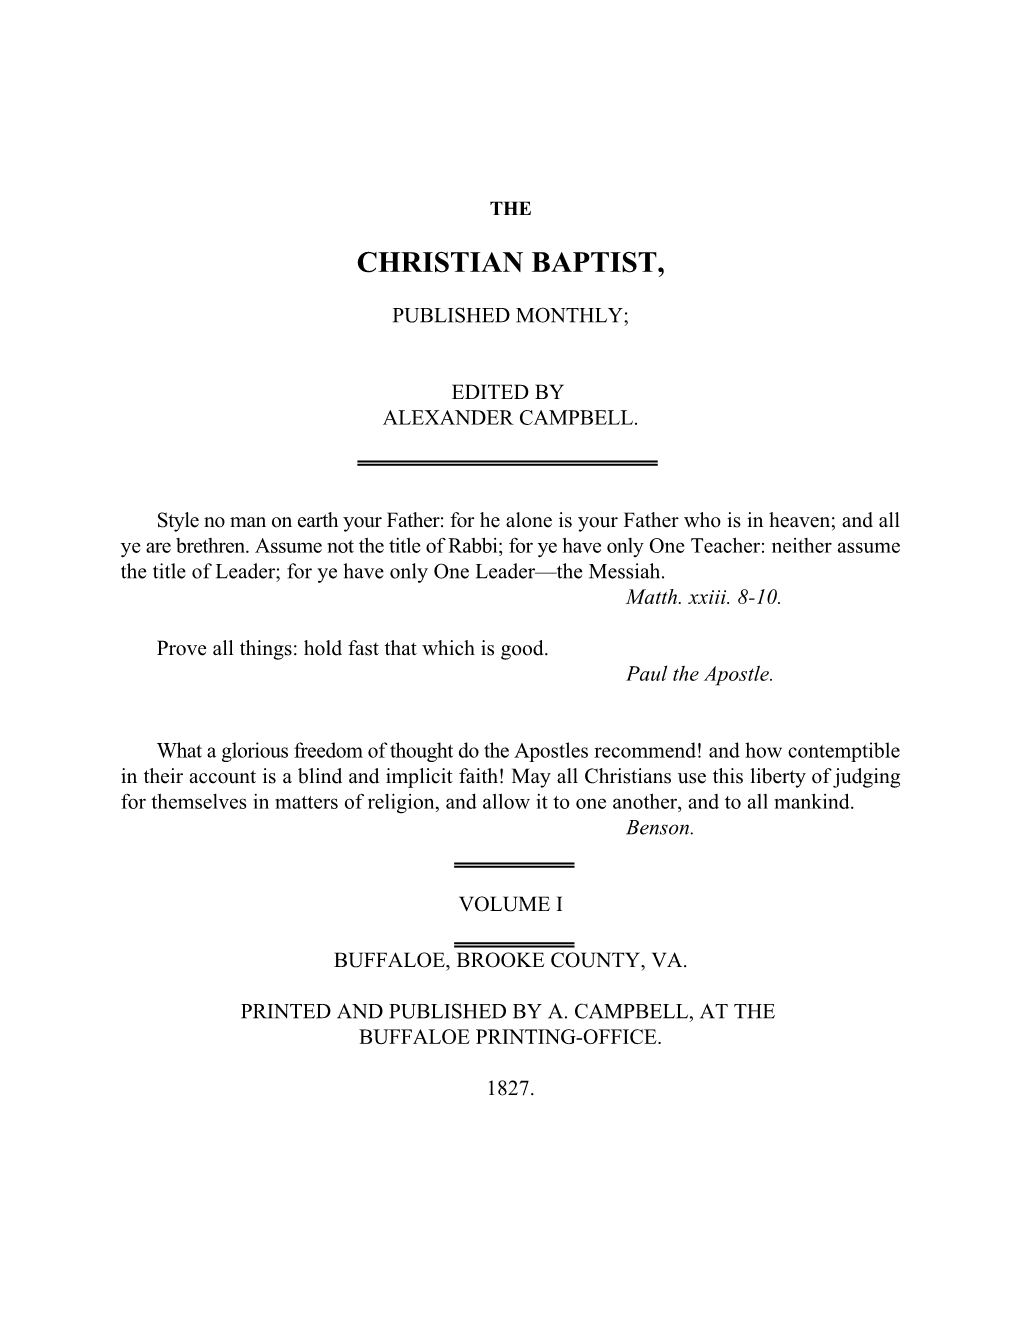 The Christian Baptist, Volume 1